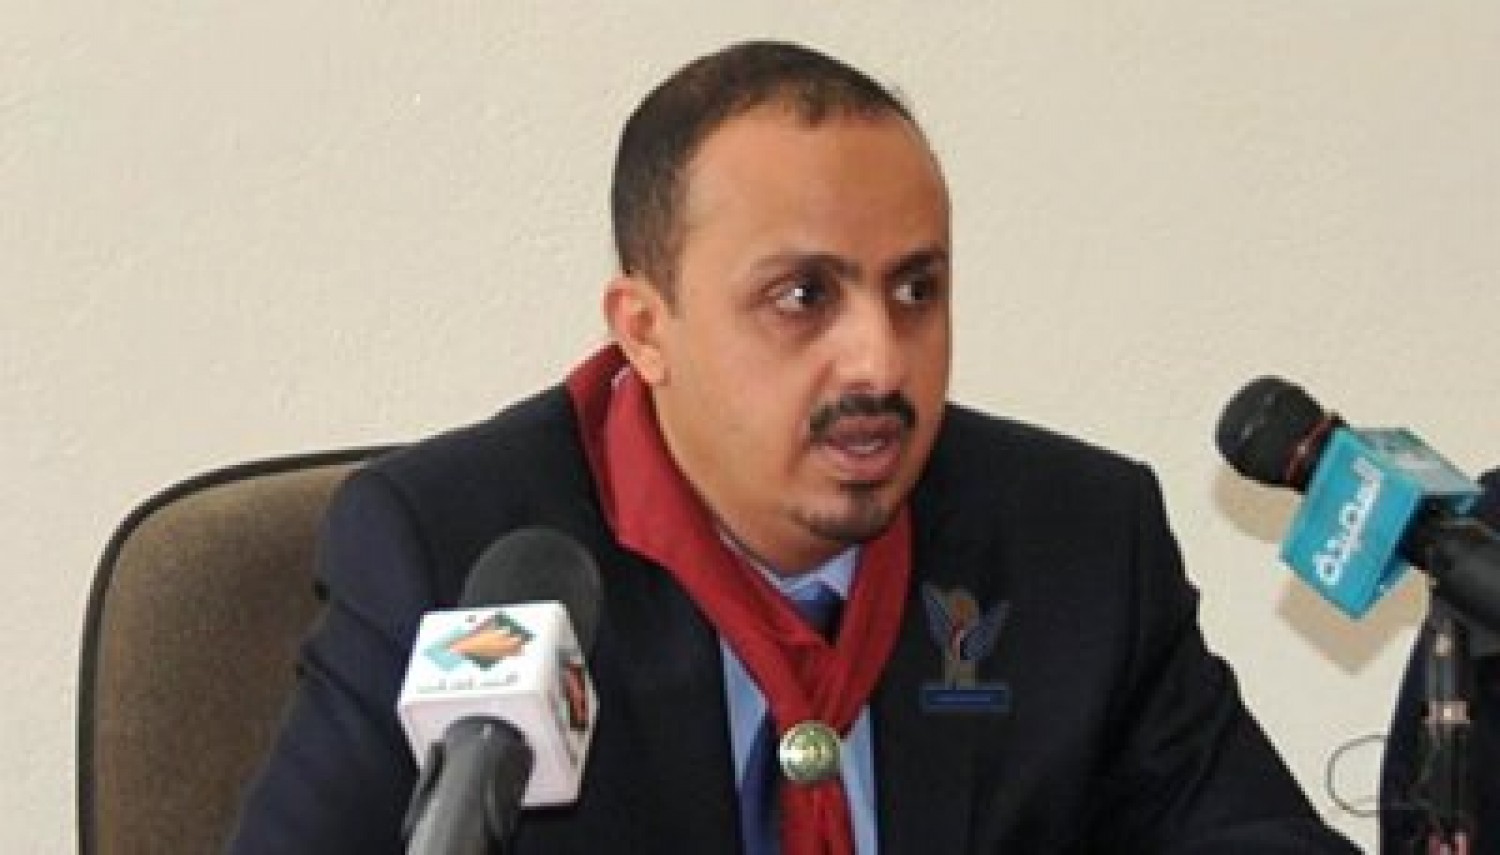   وزير الإعلام اليمني: زيارة الرئيس هادي إلى مصر ناقشت قضايا سياسية واقتصادية وأمنية هامة